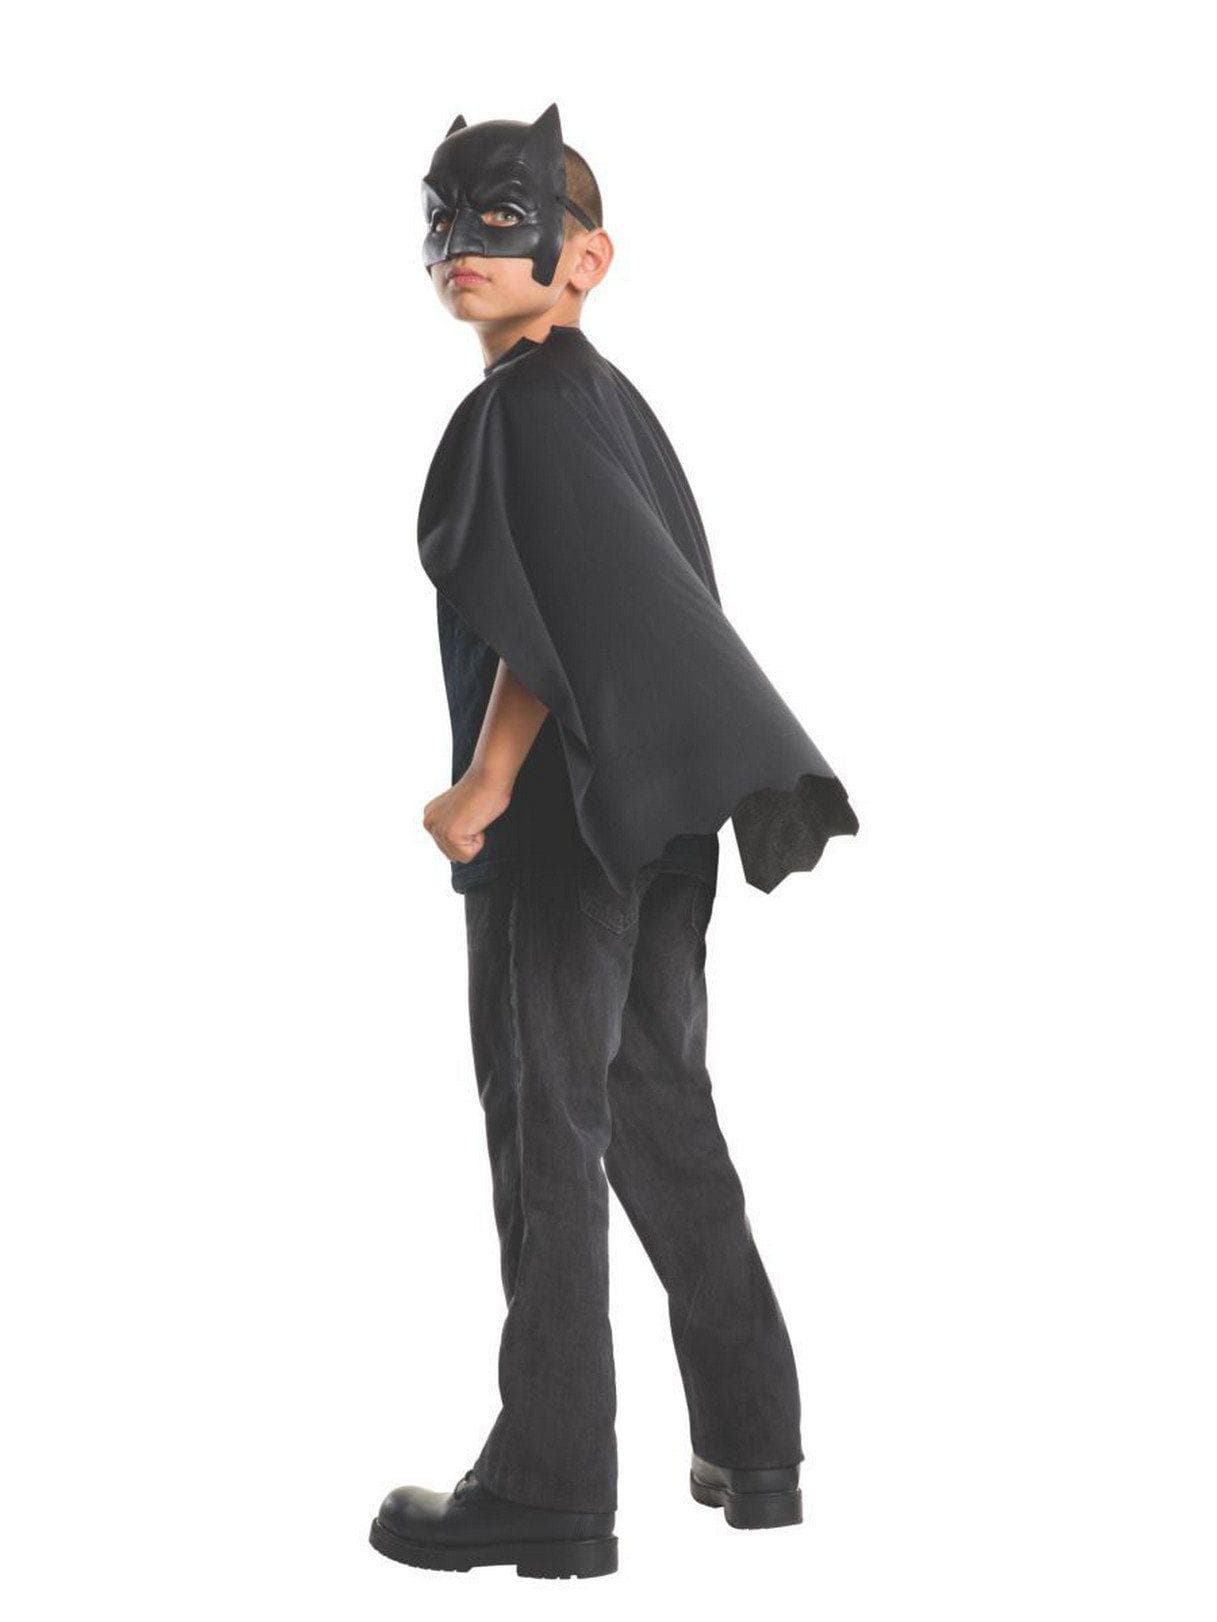 Kids' DC Comics Batman Cape and Mask - costumes.com